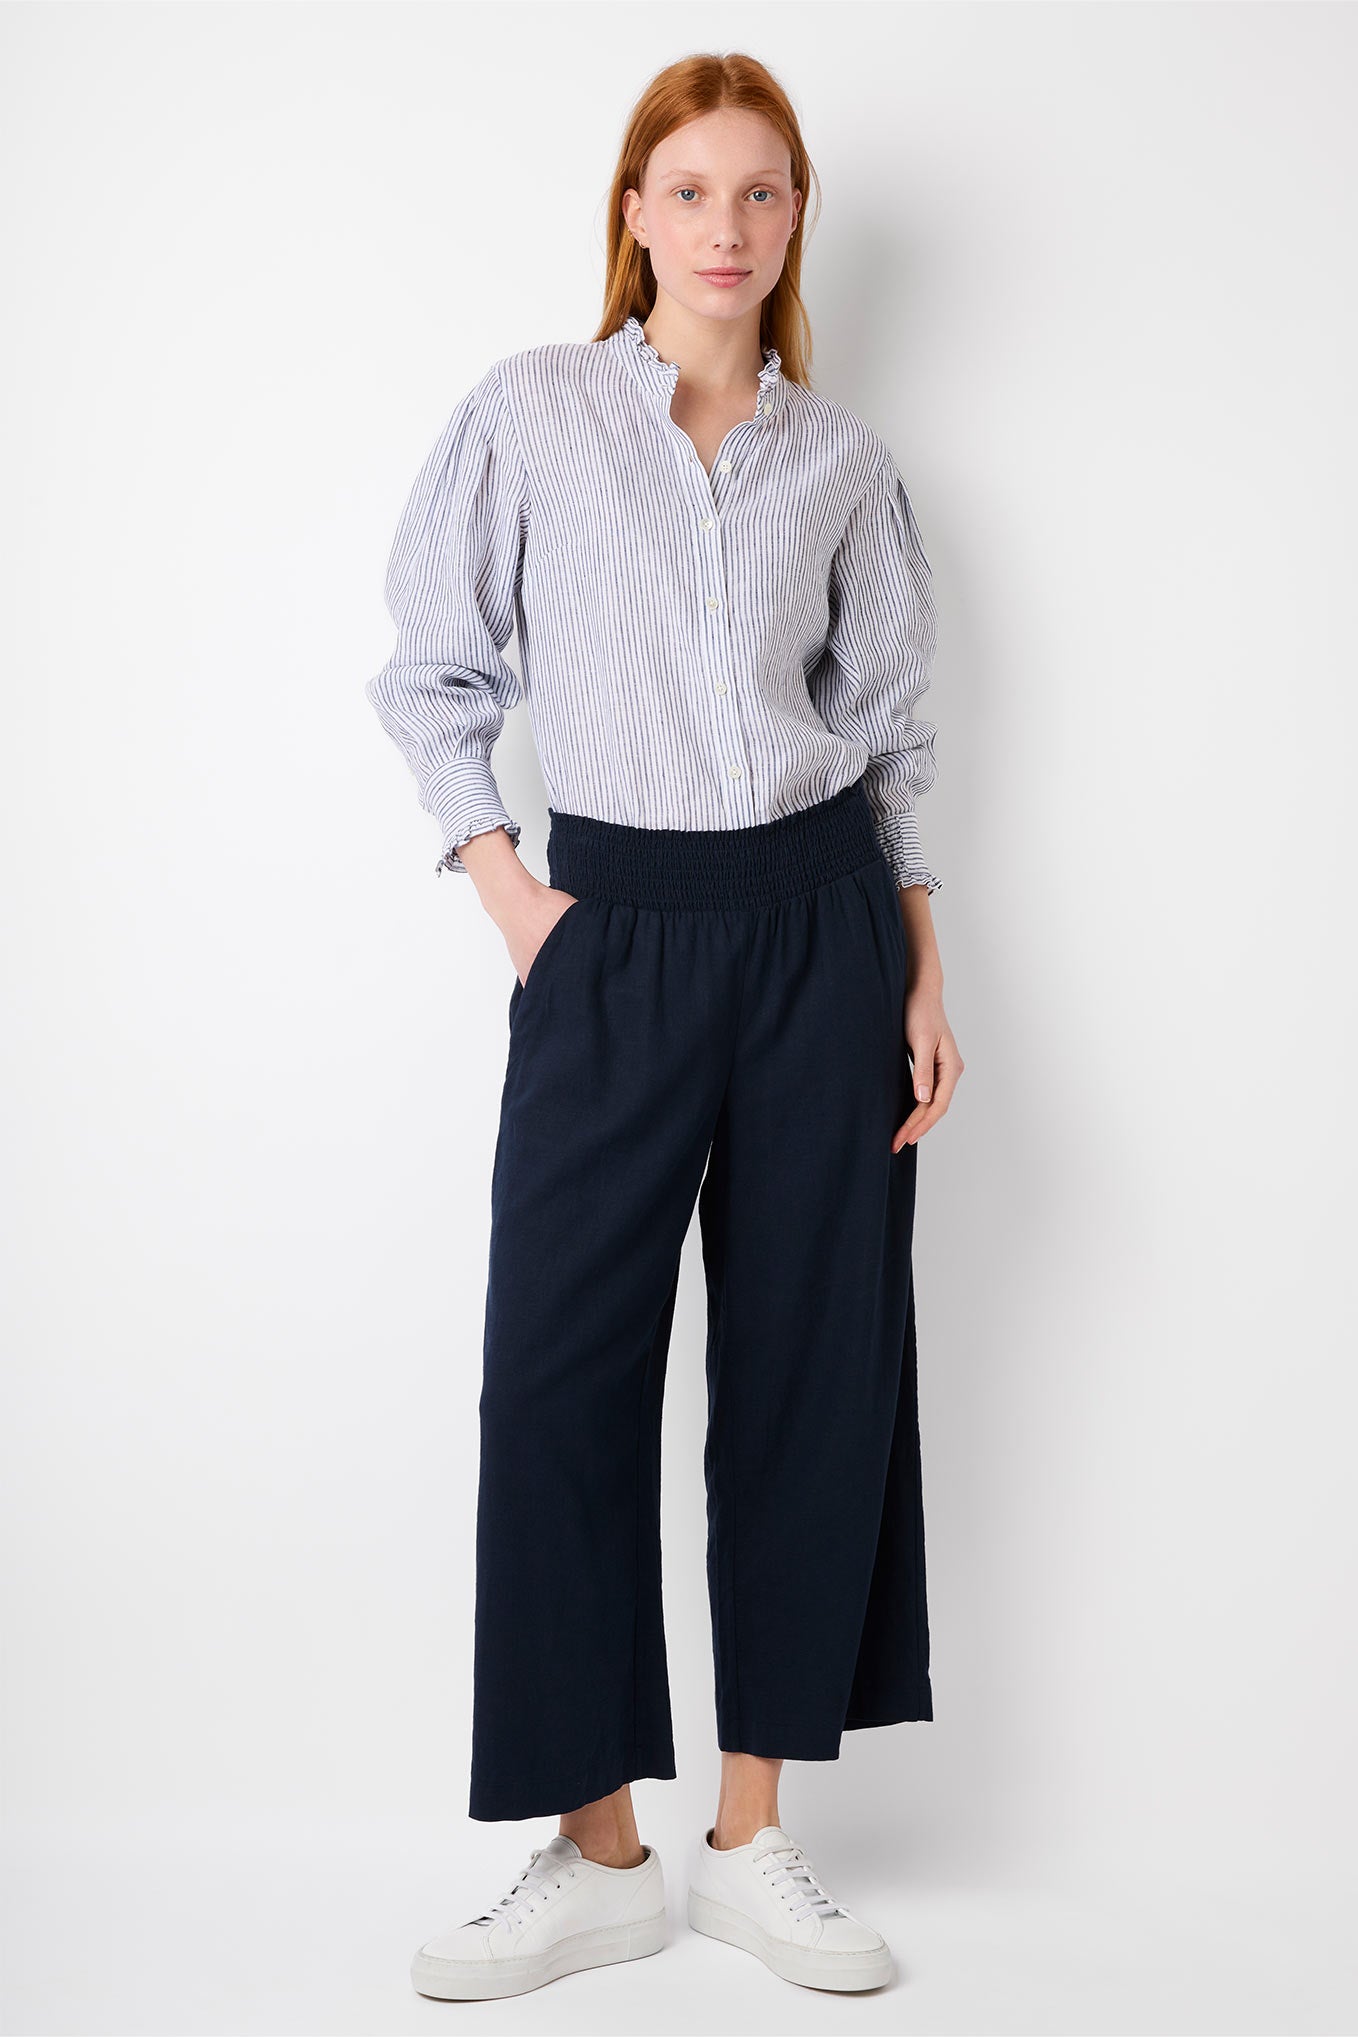 Buy Women Grey Textured Formal Regular Fit Trousers Online  799413  Van  Heusen